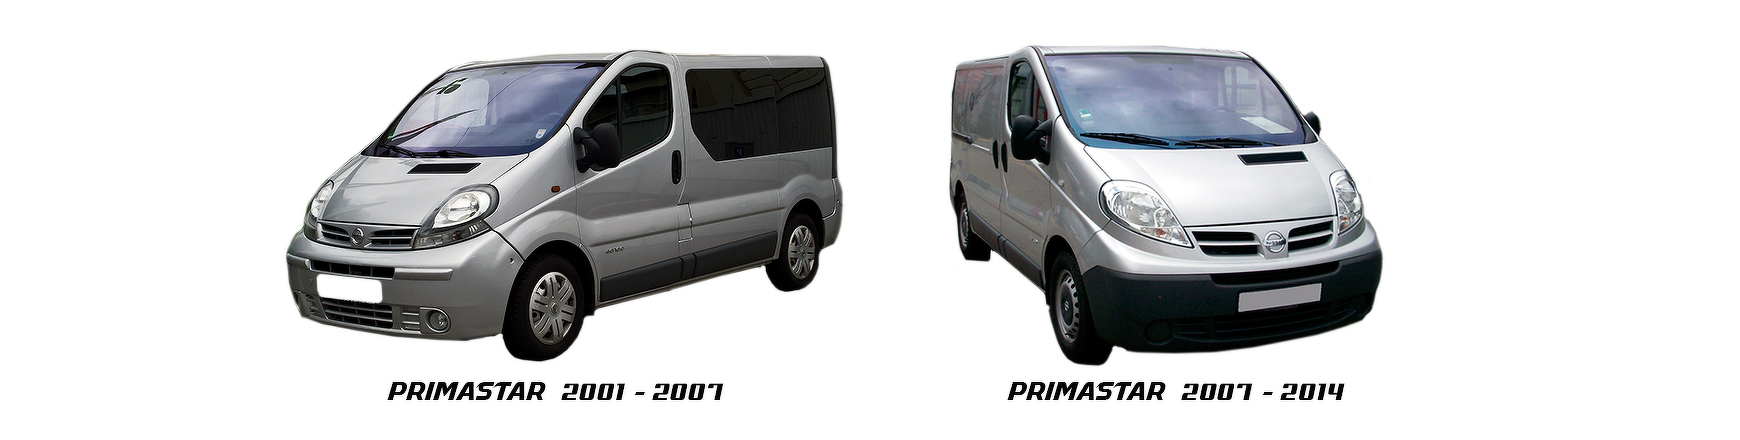 Recambios de Nissan Primastar de 2001 a 2006 al mejor precio con envío